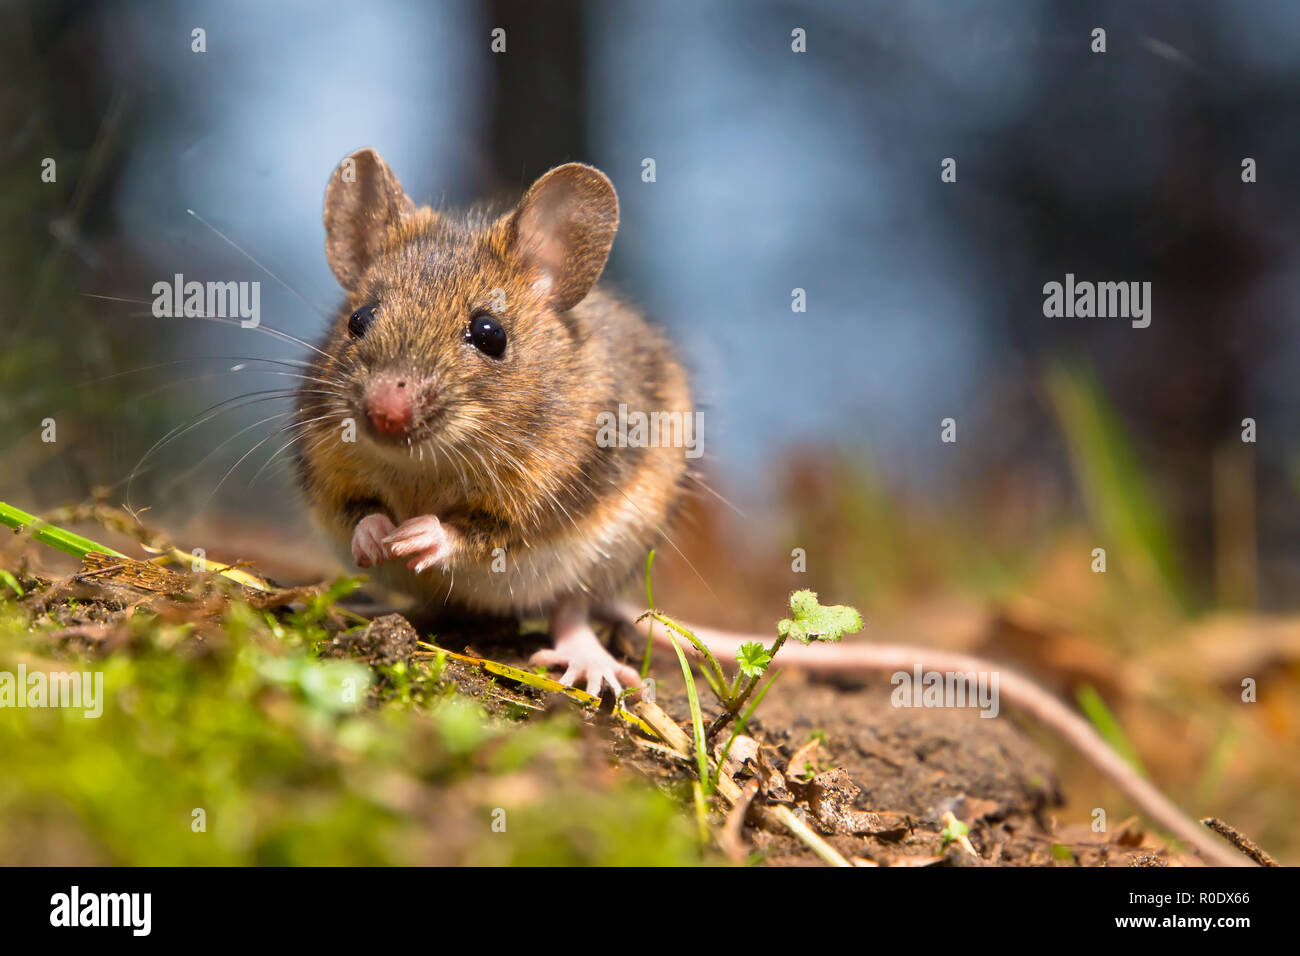 Ratón de madera silvestre sentado en el suelo del bosque Foto de stock